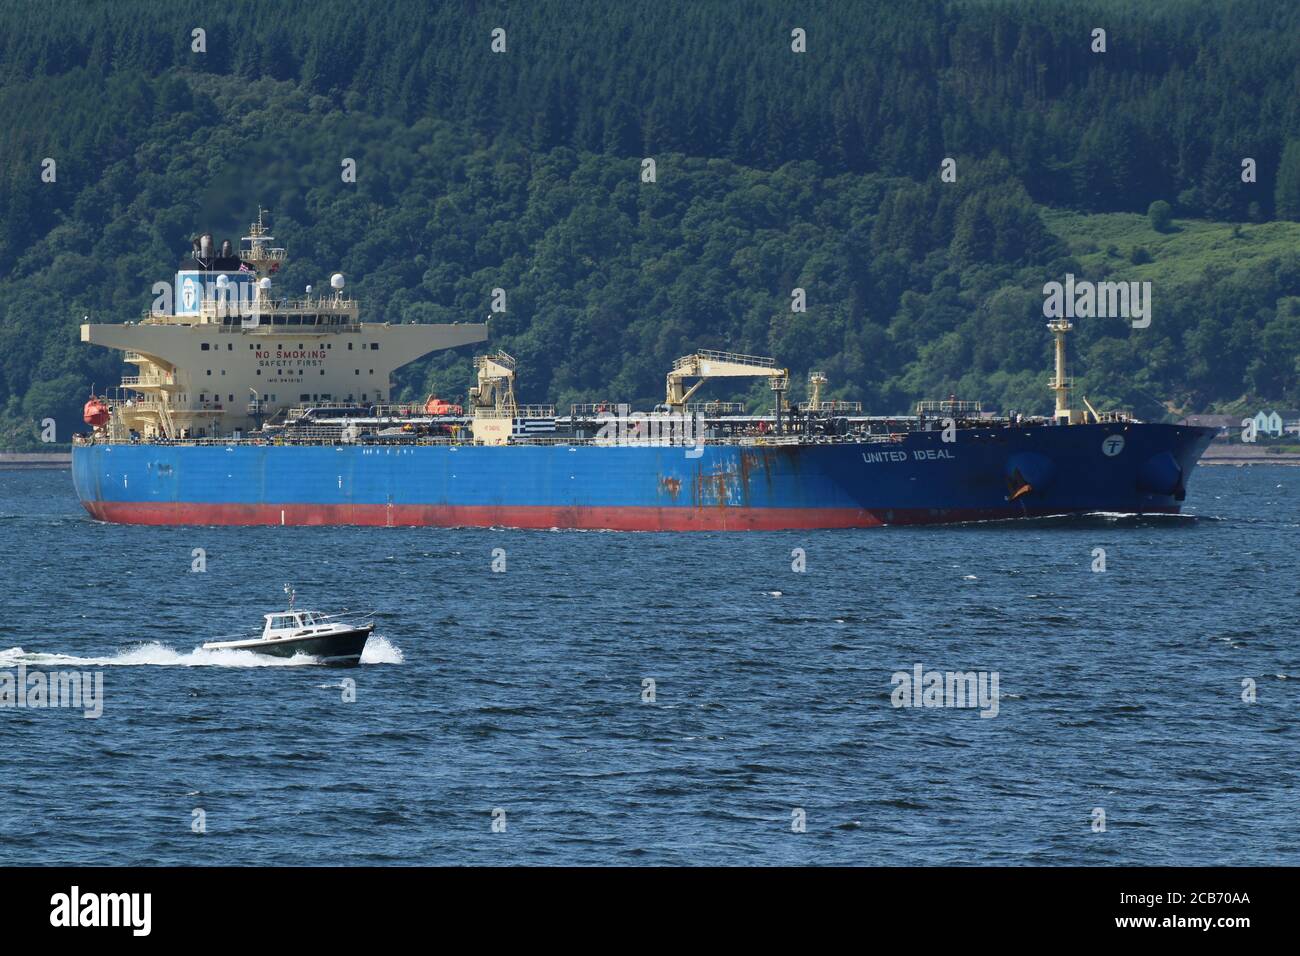 United ideal, un petrolero operado por Marine Management Services, frente a Gourock en el Firth of Clyde, pasando por el crucero de cabina Diligence. Foto de stock